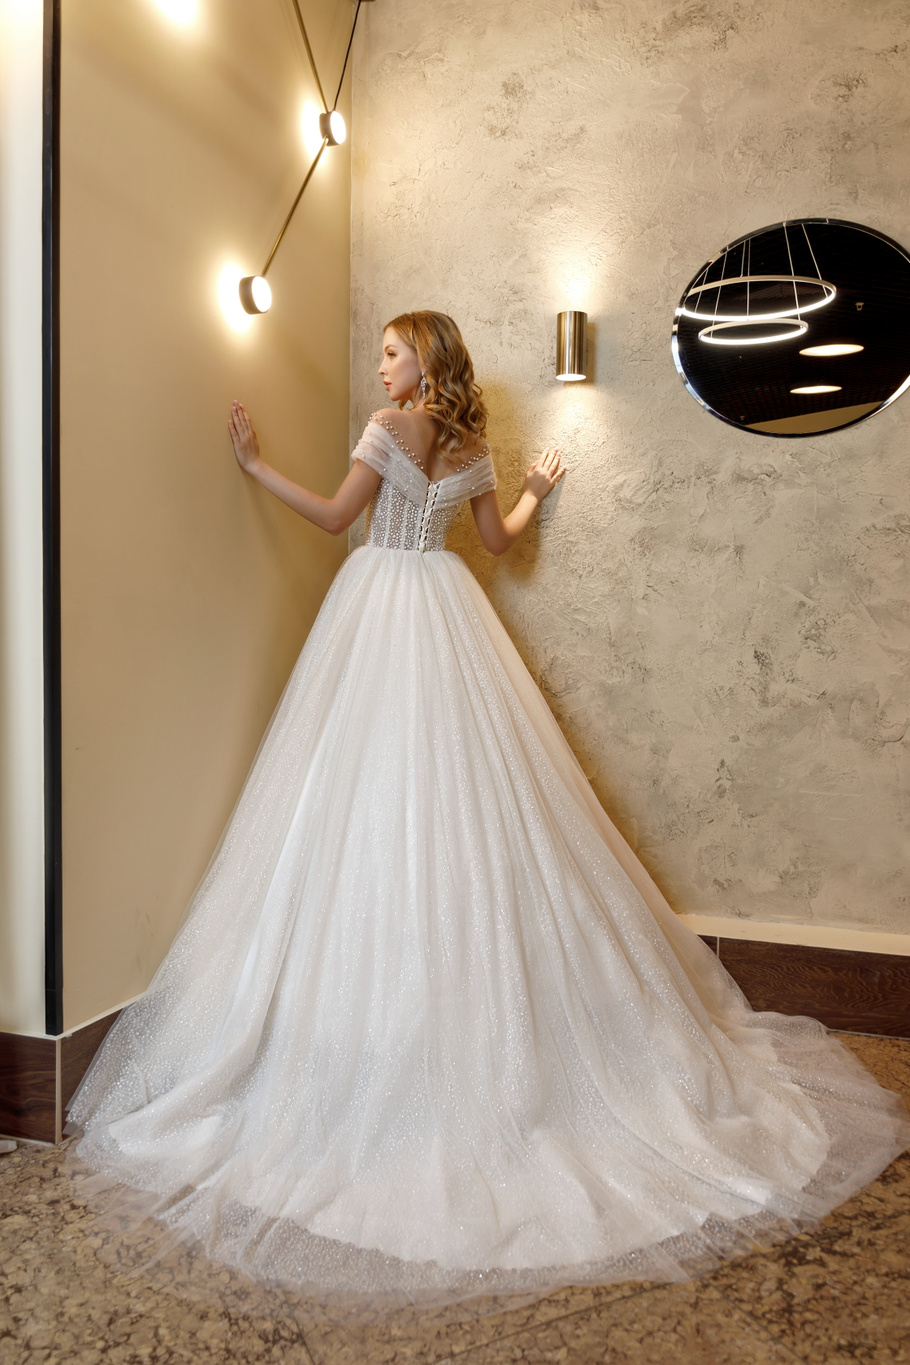 Купить свадебное платье «Брайд» Олег Бабуров из коллекции 2021 года в салоне «Мэри Трюфель»